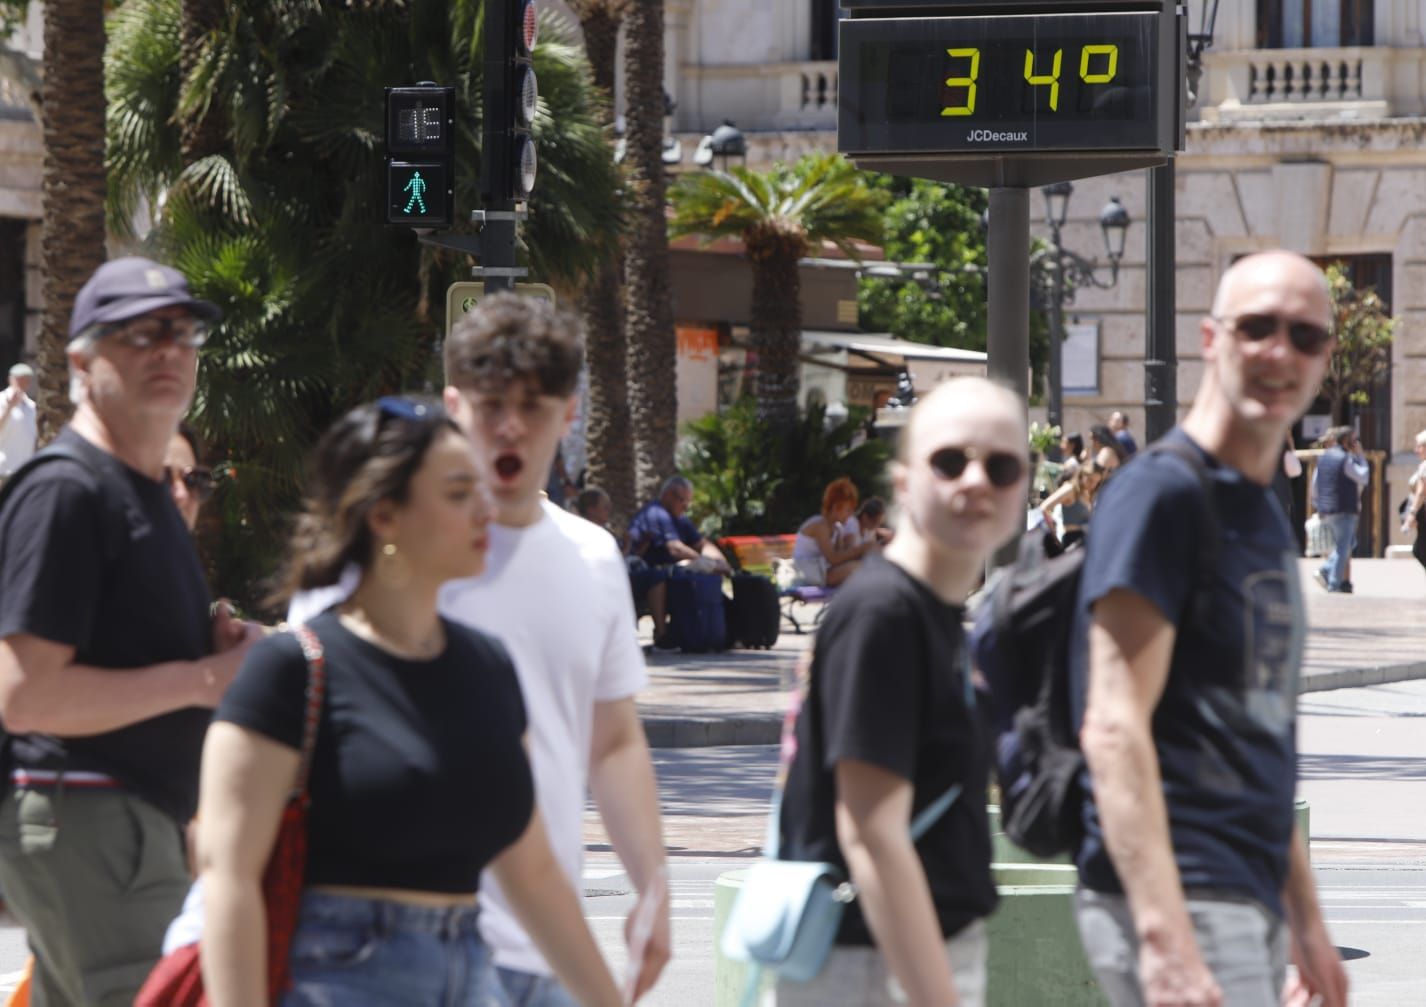 Valencia registra las temperaturas más altas de Europa